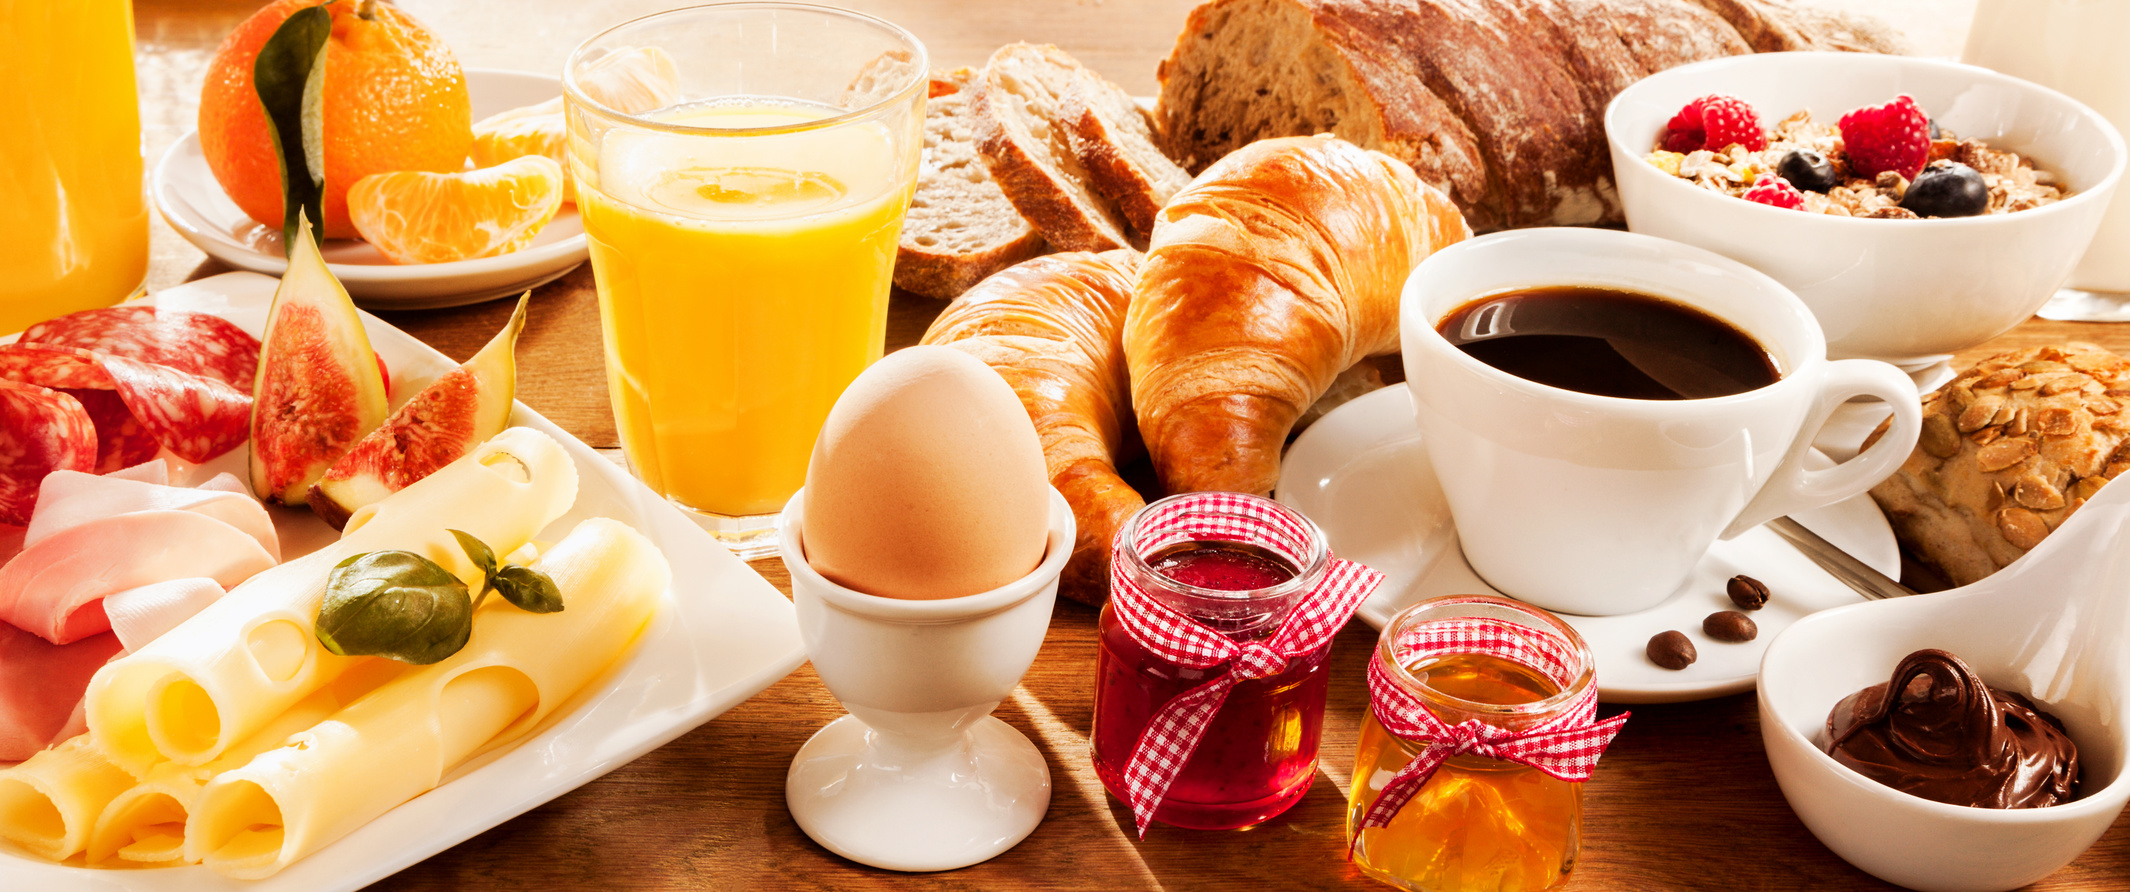 Die besten Vergleichssieger - Wählen Sie die Frühstücksset 3 teilig Ihren Wünschen entsprechend